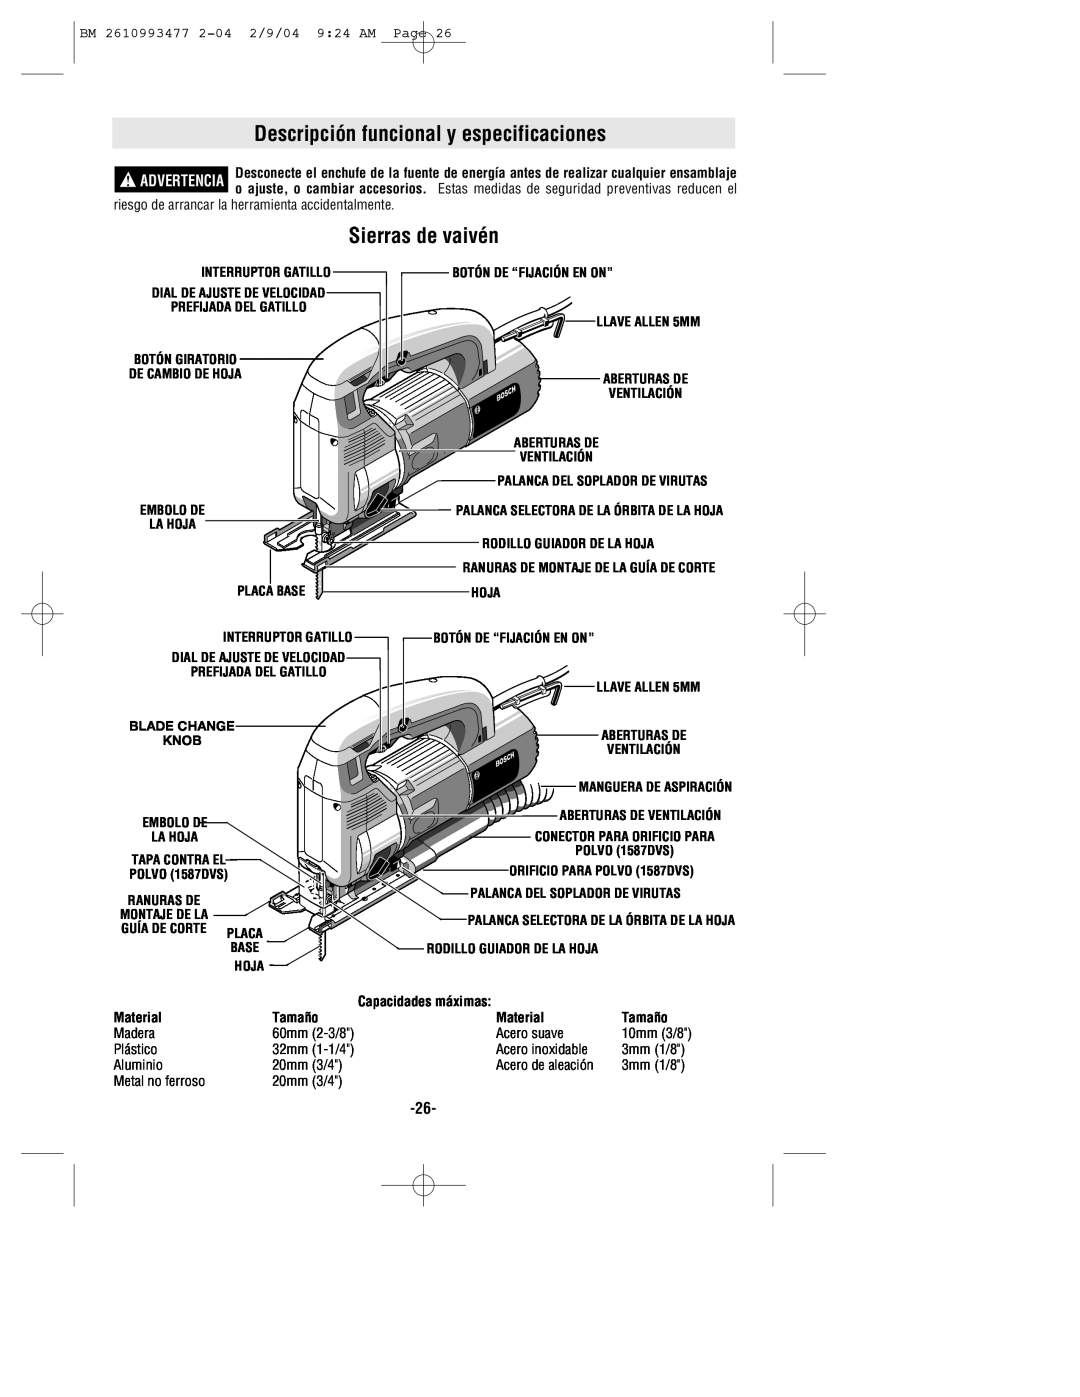 Bosch Power Tools 1587DVS manual Descripción funcional y especificaciones, Sierras de vaivén, Capacidades máximas, Material 